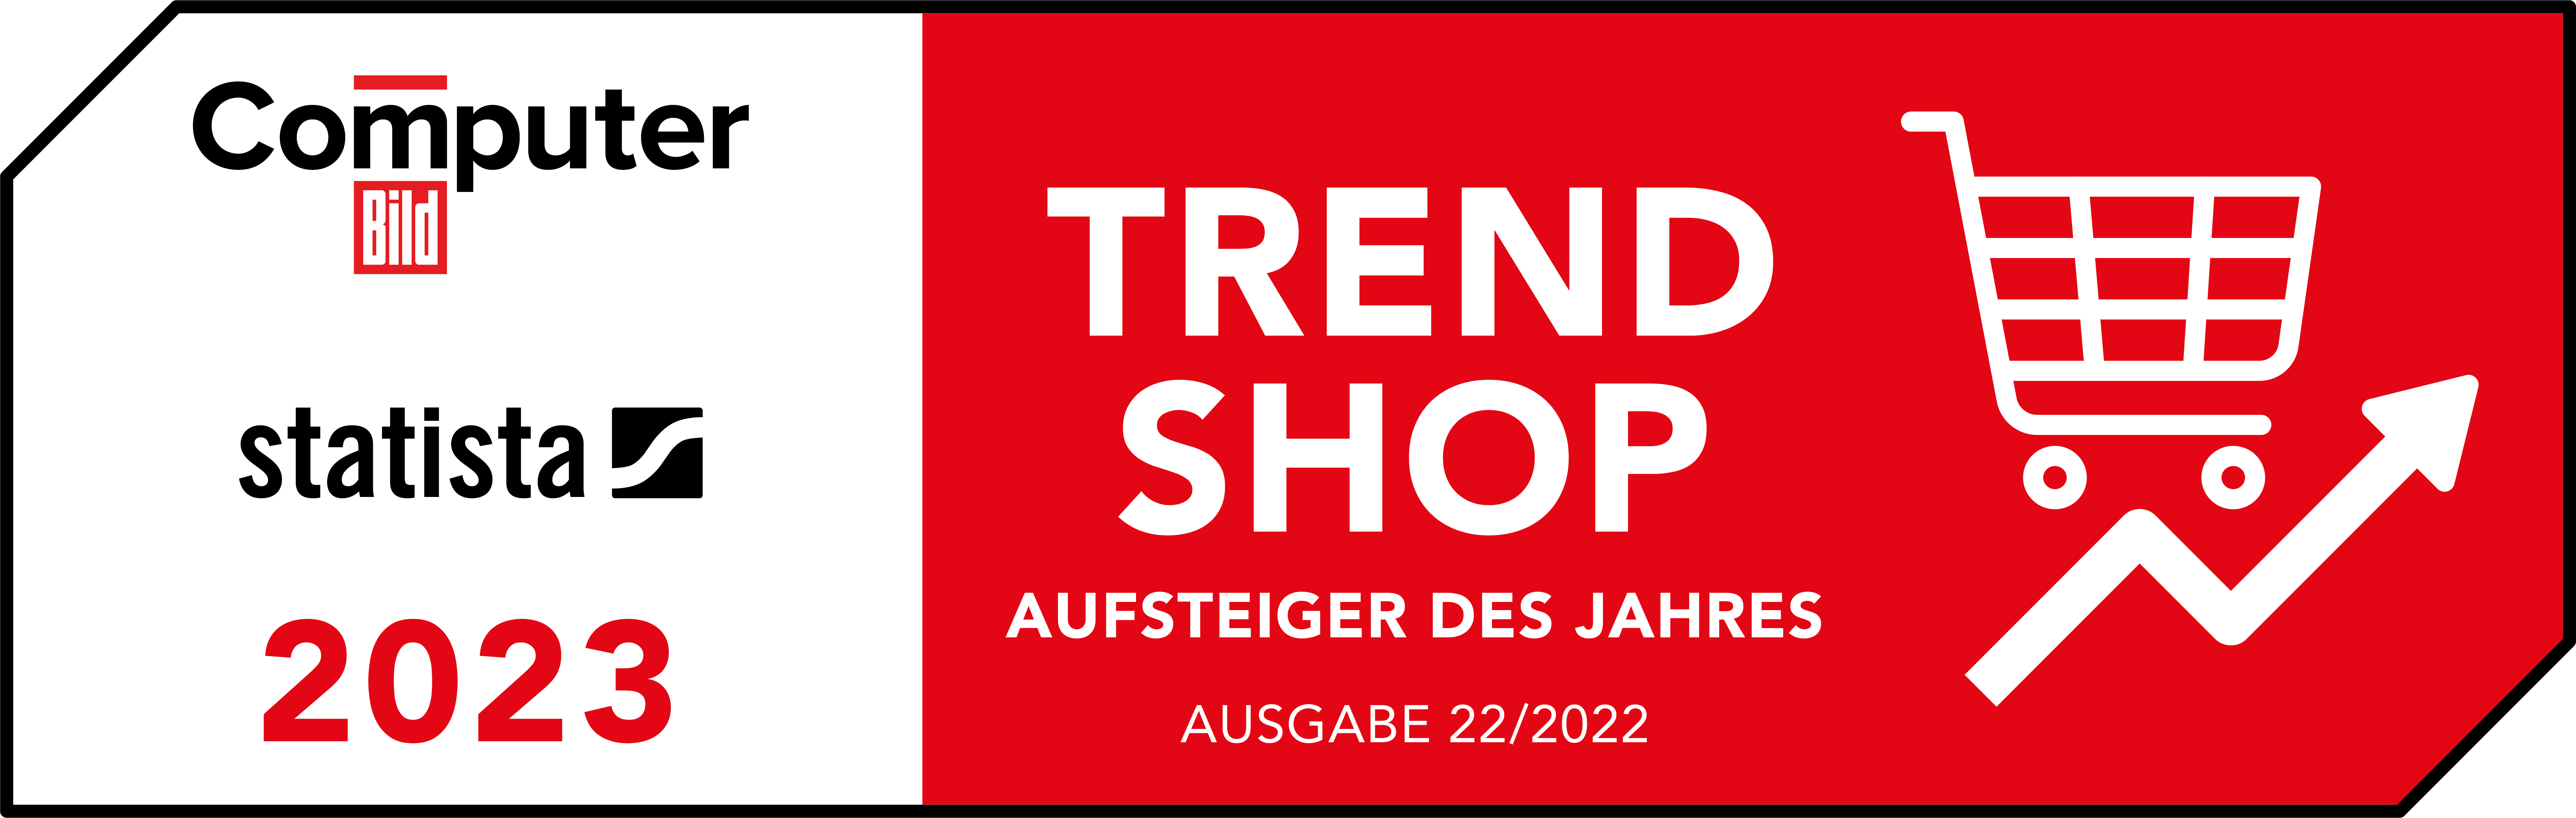 Online-Shop von ZOXS als Trend Shop 2023 ausgezeichnet